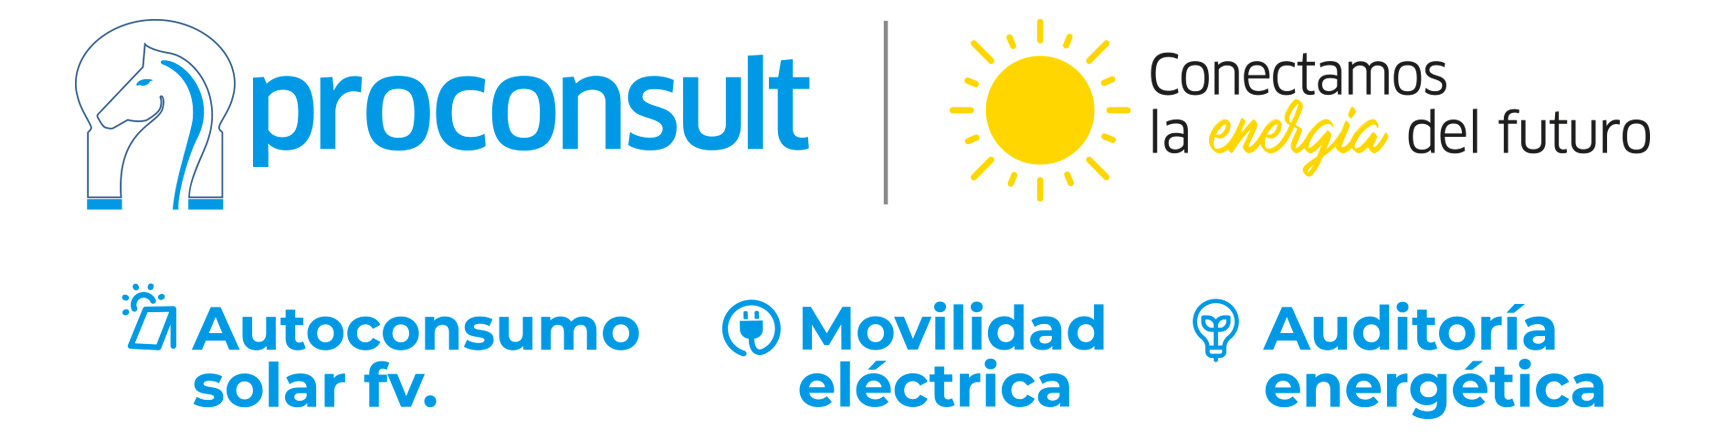 Proconsult. Autoconsumo, energía solar y movilidad eléctrica en Almería